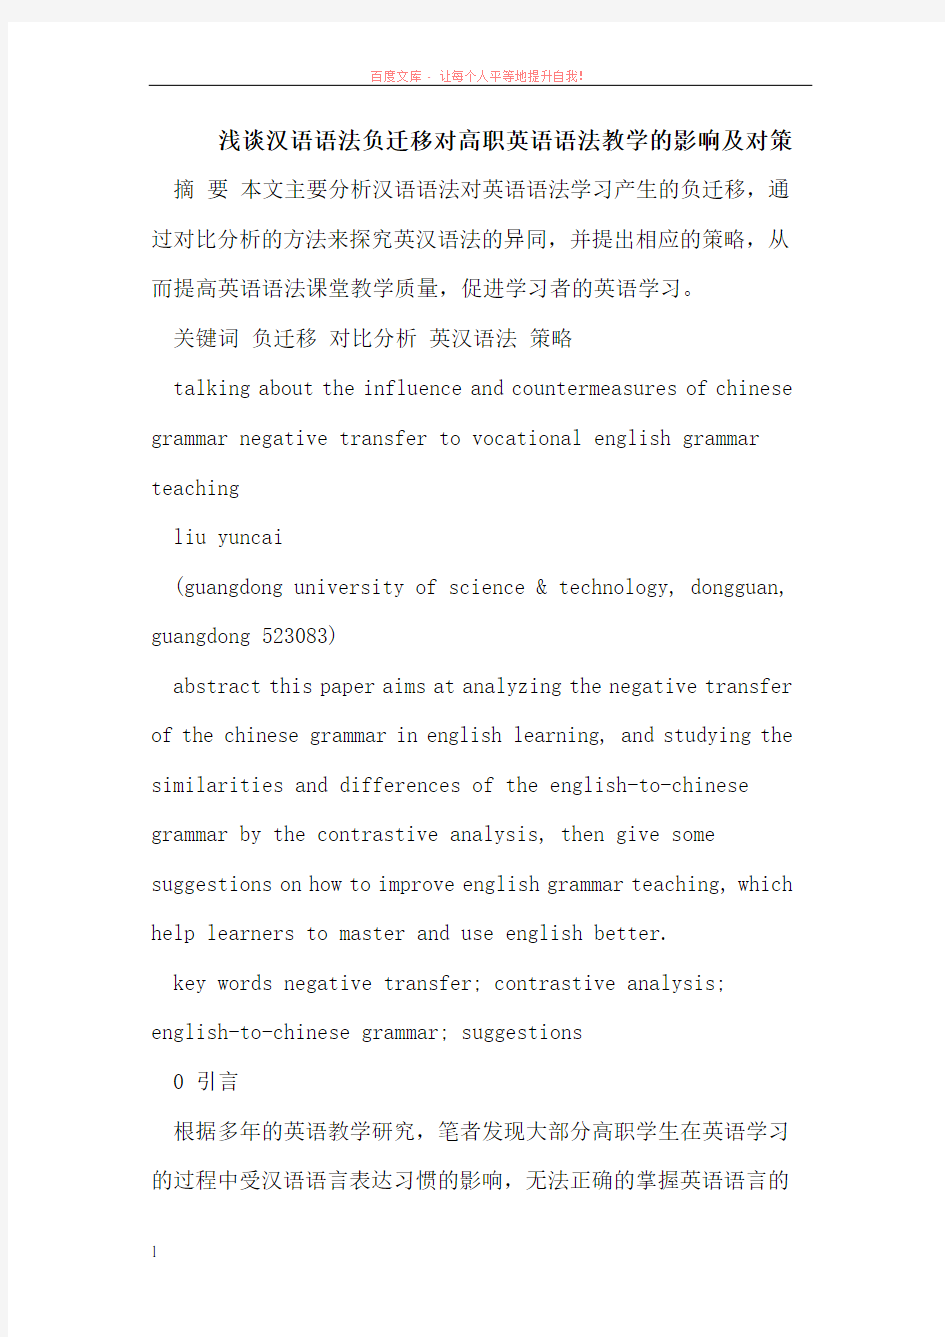 汉语语法负迁移对高职英语语法教学的影响及对策 (1)